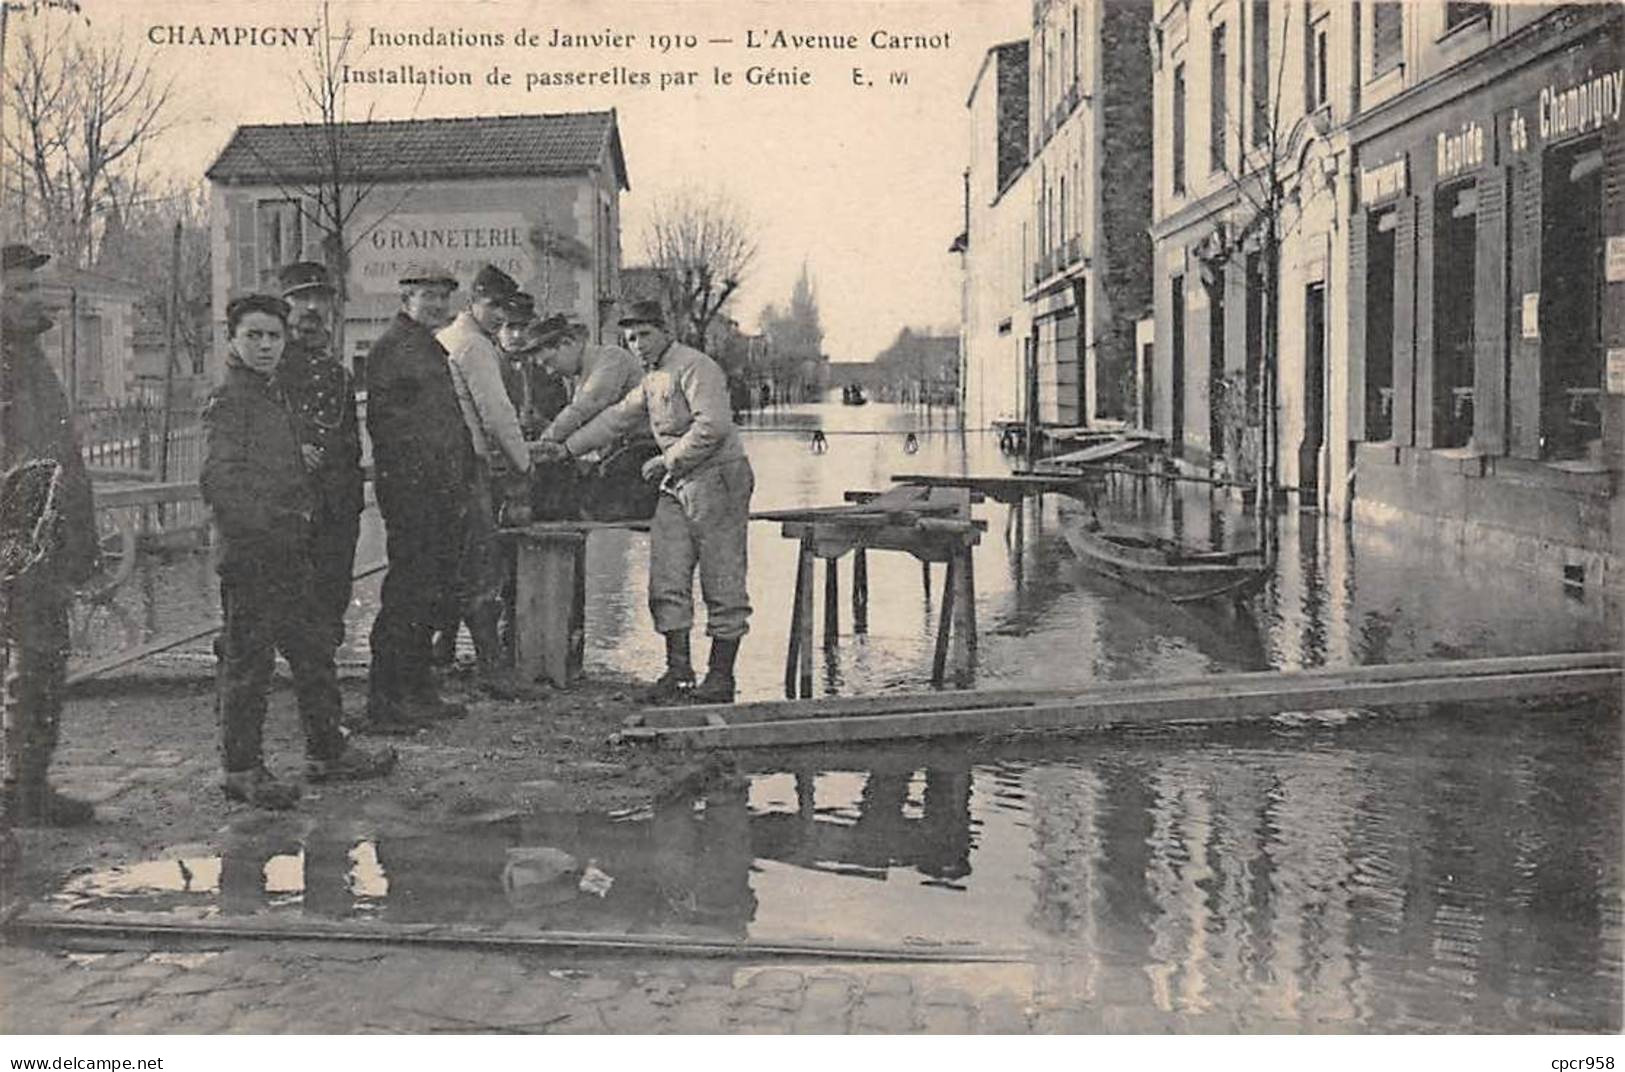 94 - CHAMPIGNY - SAN52230 - Inondations De Janvier 1910 - L'Avenue Carnot - Installation De Passerelles Par Le Génie - Champigny Sur Marne